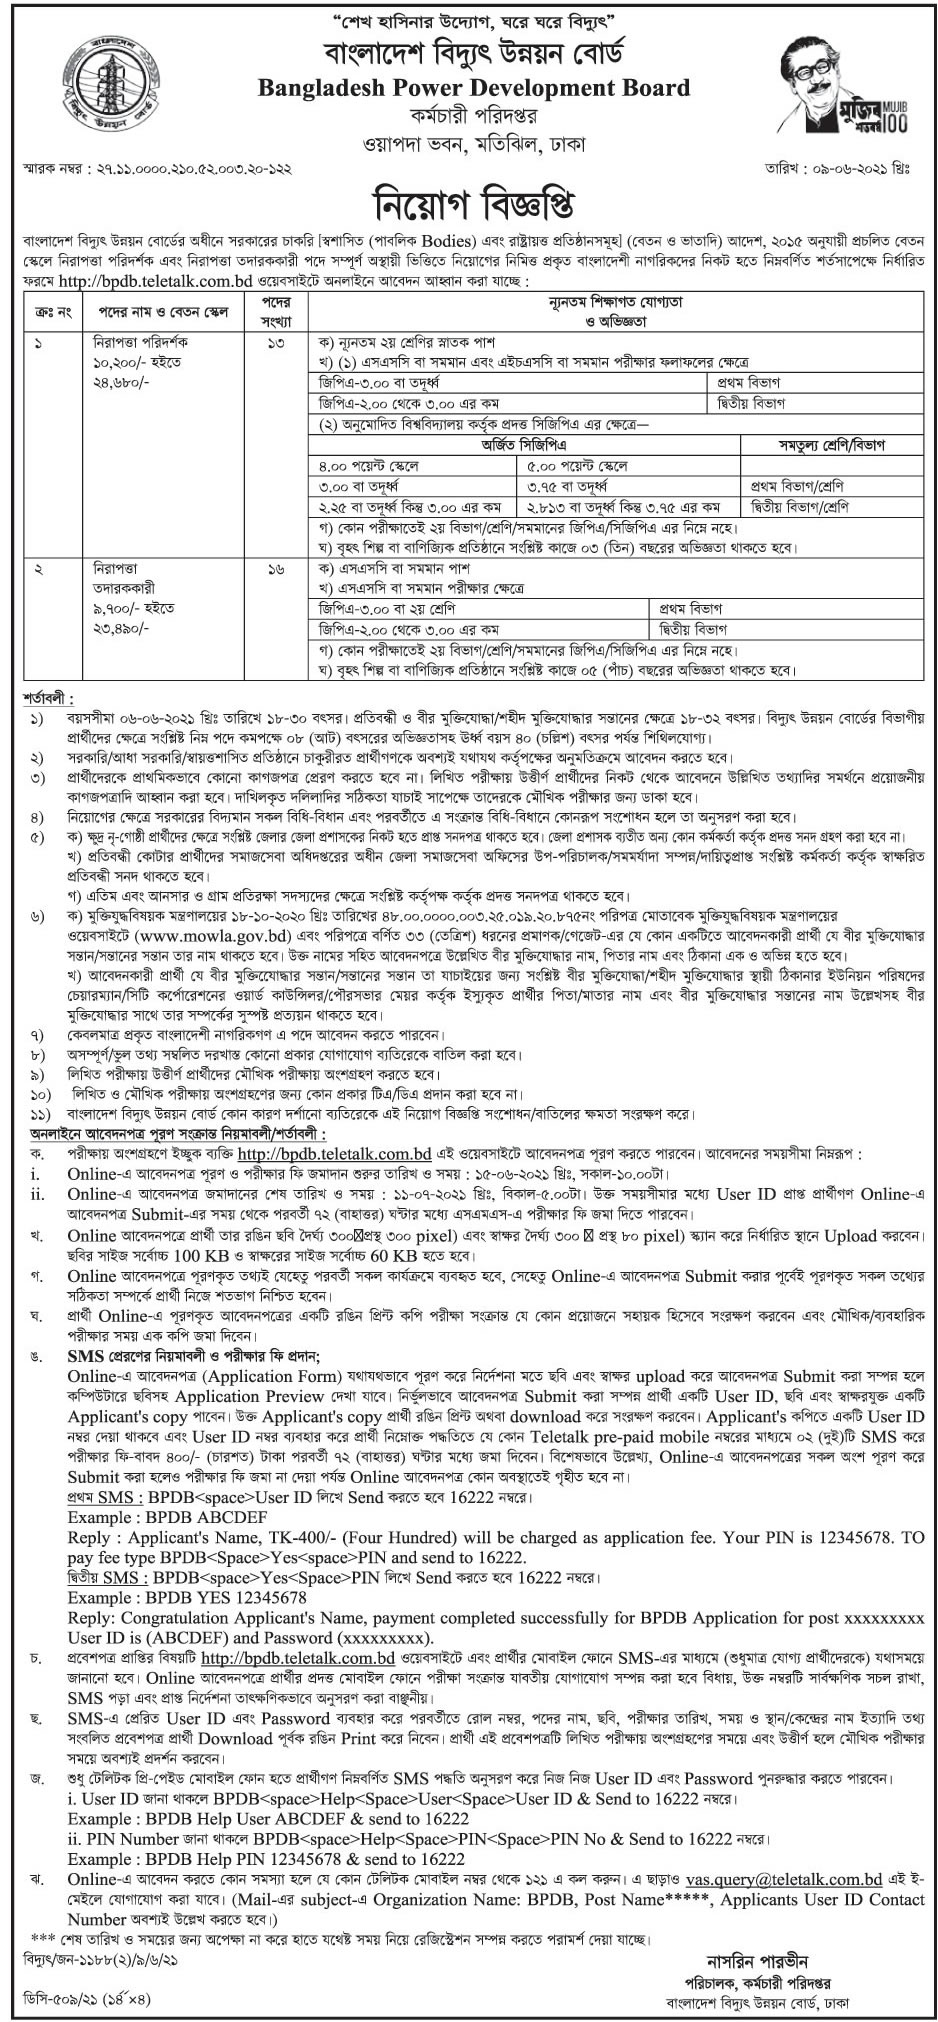 বাংলাদেশ বিদ্যুৎ উন্নয়ন বোর্ডে নতুন নিয়োগ বিজ্ঞপ্তি ২০২১ - Bangladesh Power Development Board BPDB Job circular 2021 - সরকারি চাকরির খবর ২০২১